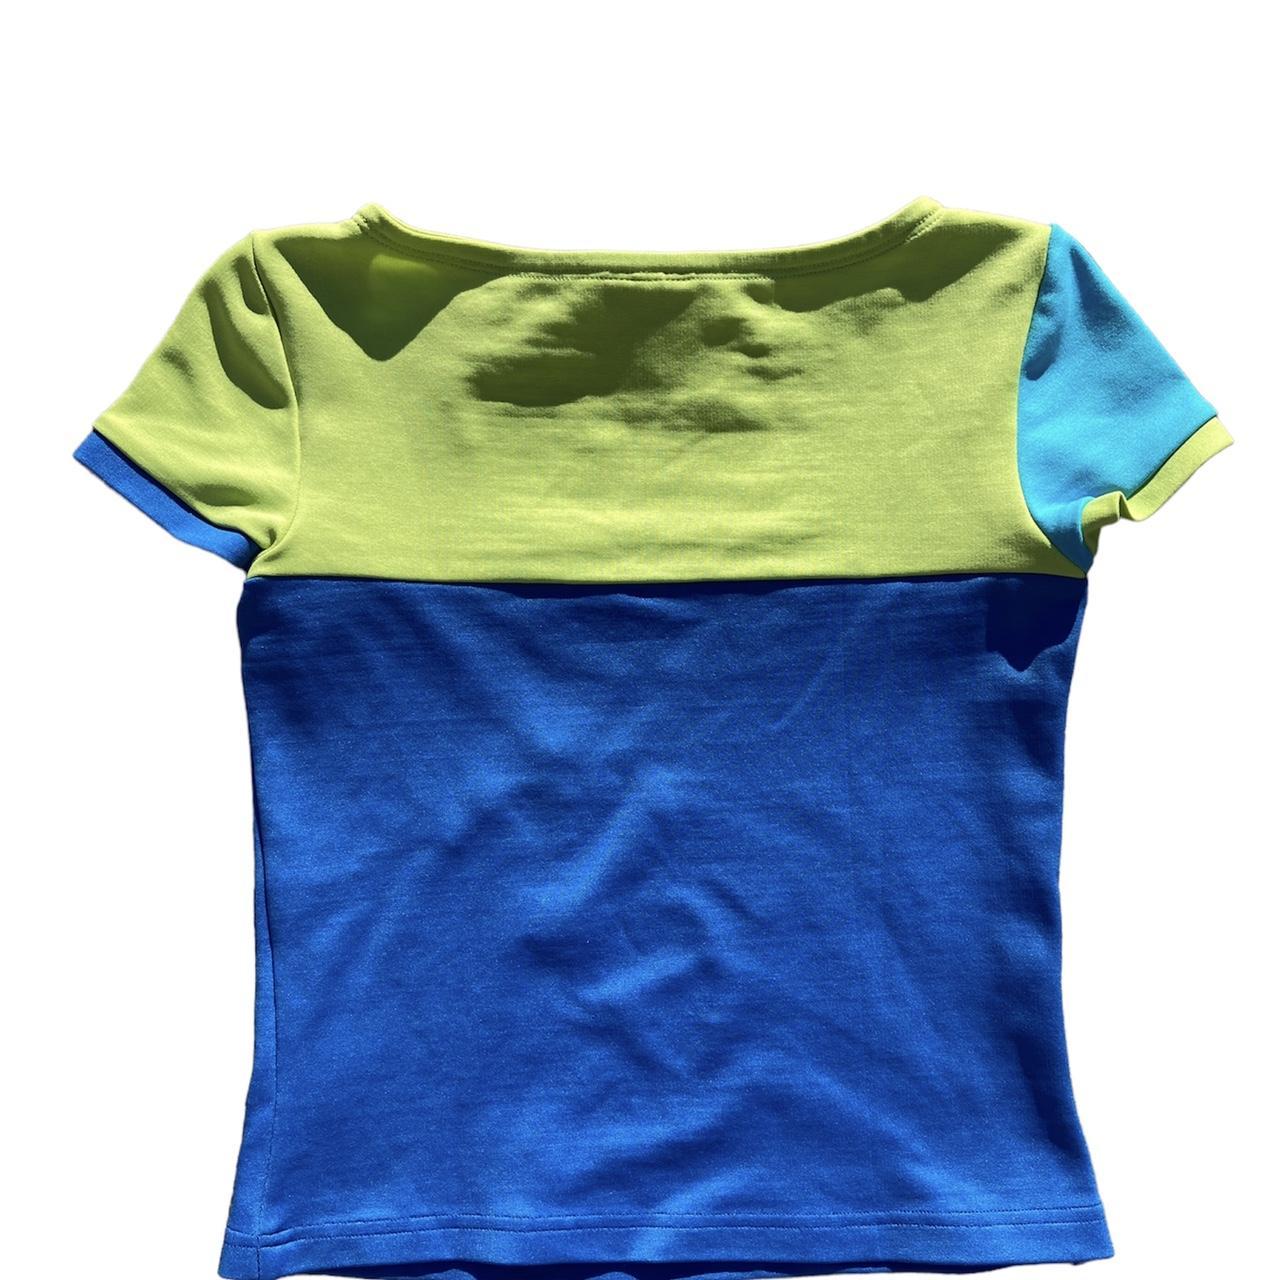 Versus Women's Blue and Green T-shirt (2)